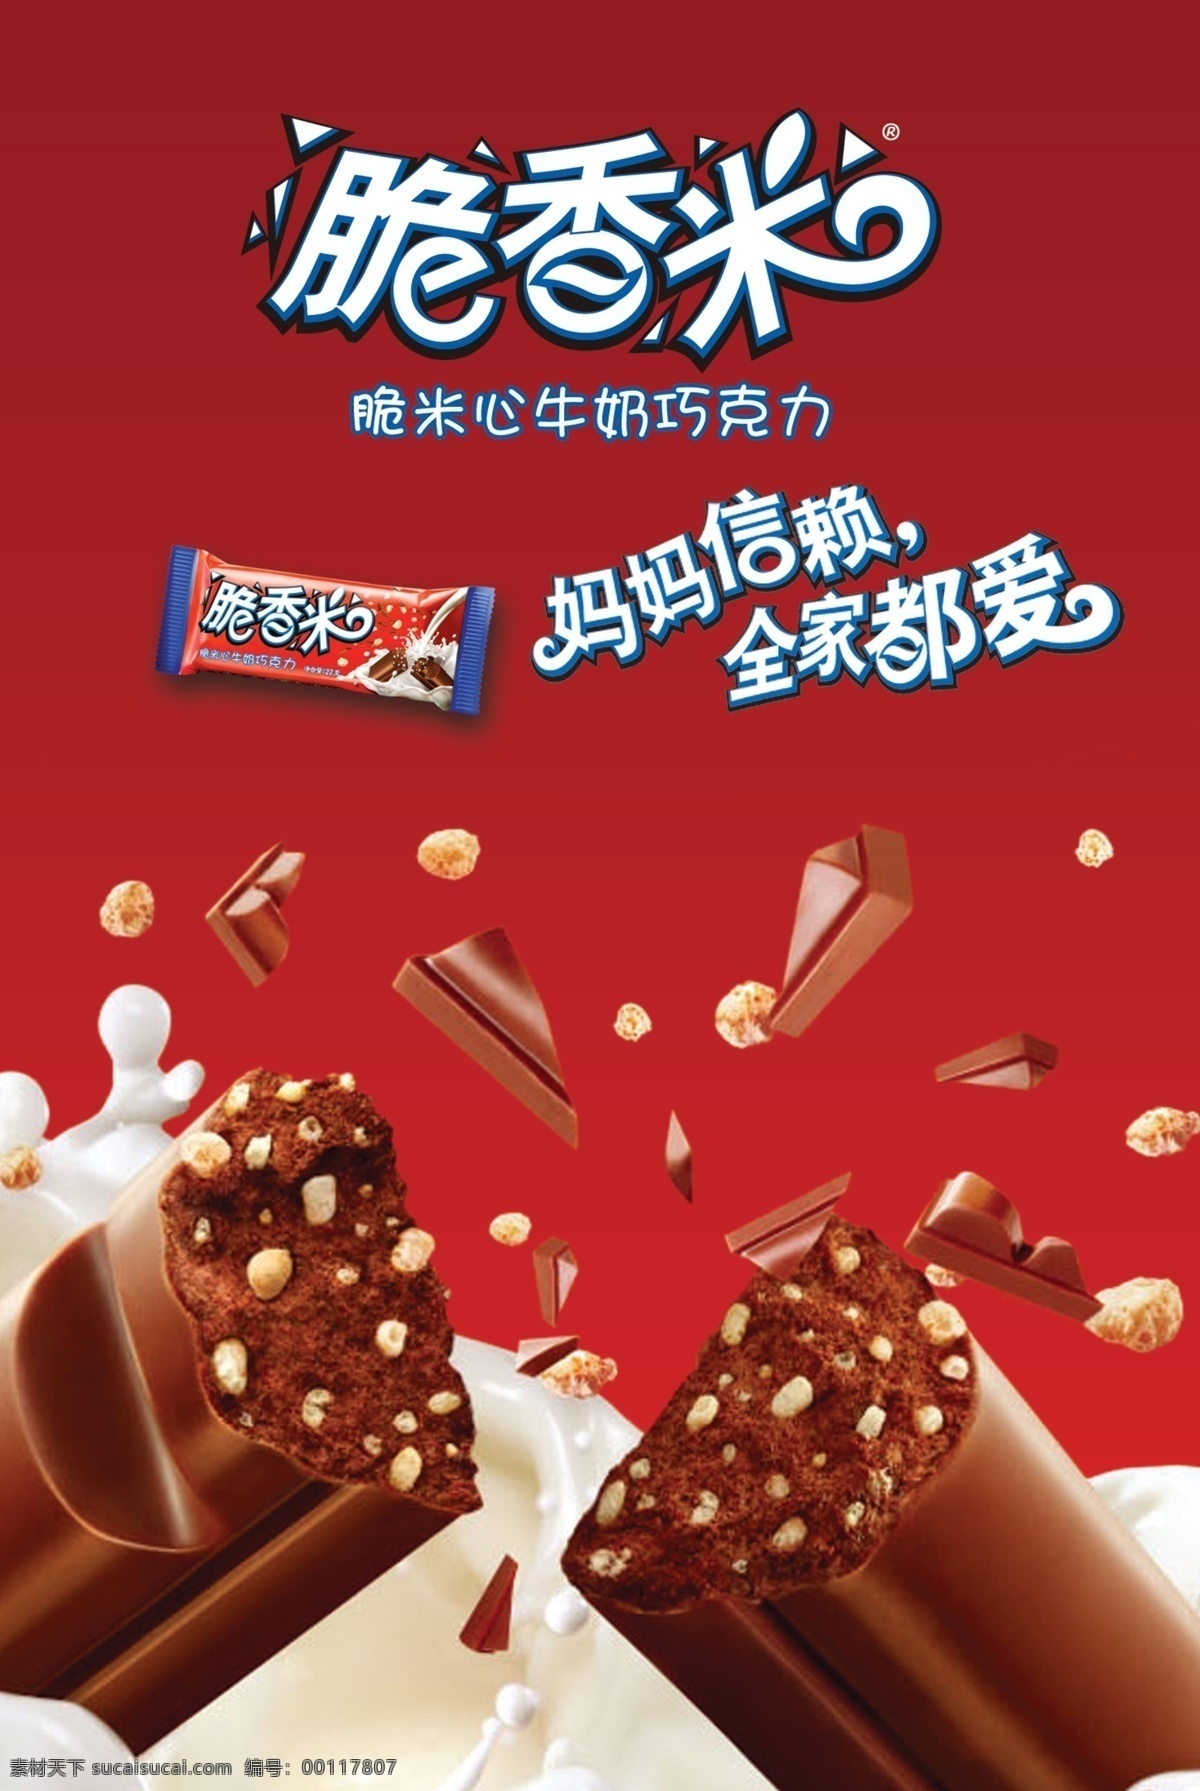 脆香米 巧克力 牛奶 零食 红色 吊旗 地堆 吊牌 花生 广告设计模板 源文件